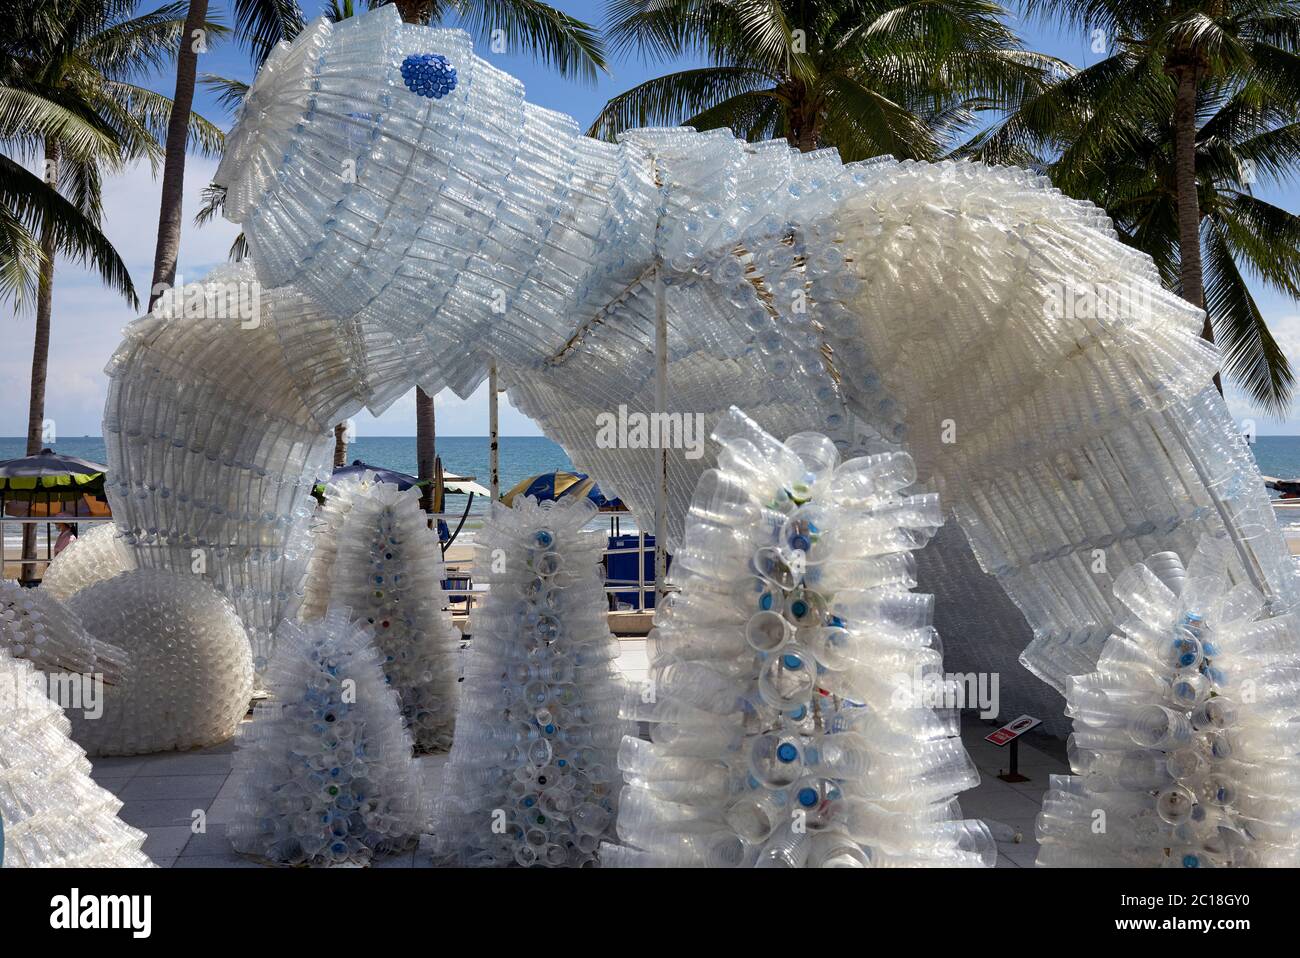 Arte plastica che usa bicchieri di plastica riciclata che mette in evidenza  i pericoli ambientali dello smaltimento della plastica in mare. Jomtien,  Pattaya, Tailandia Foto stock - Alamy